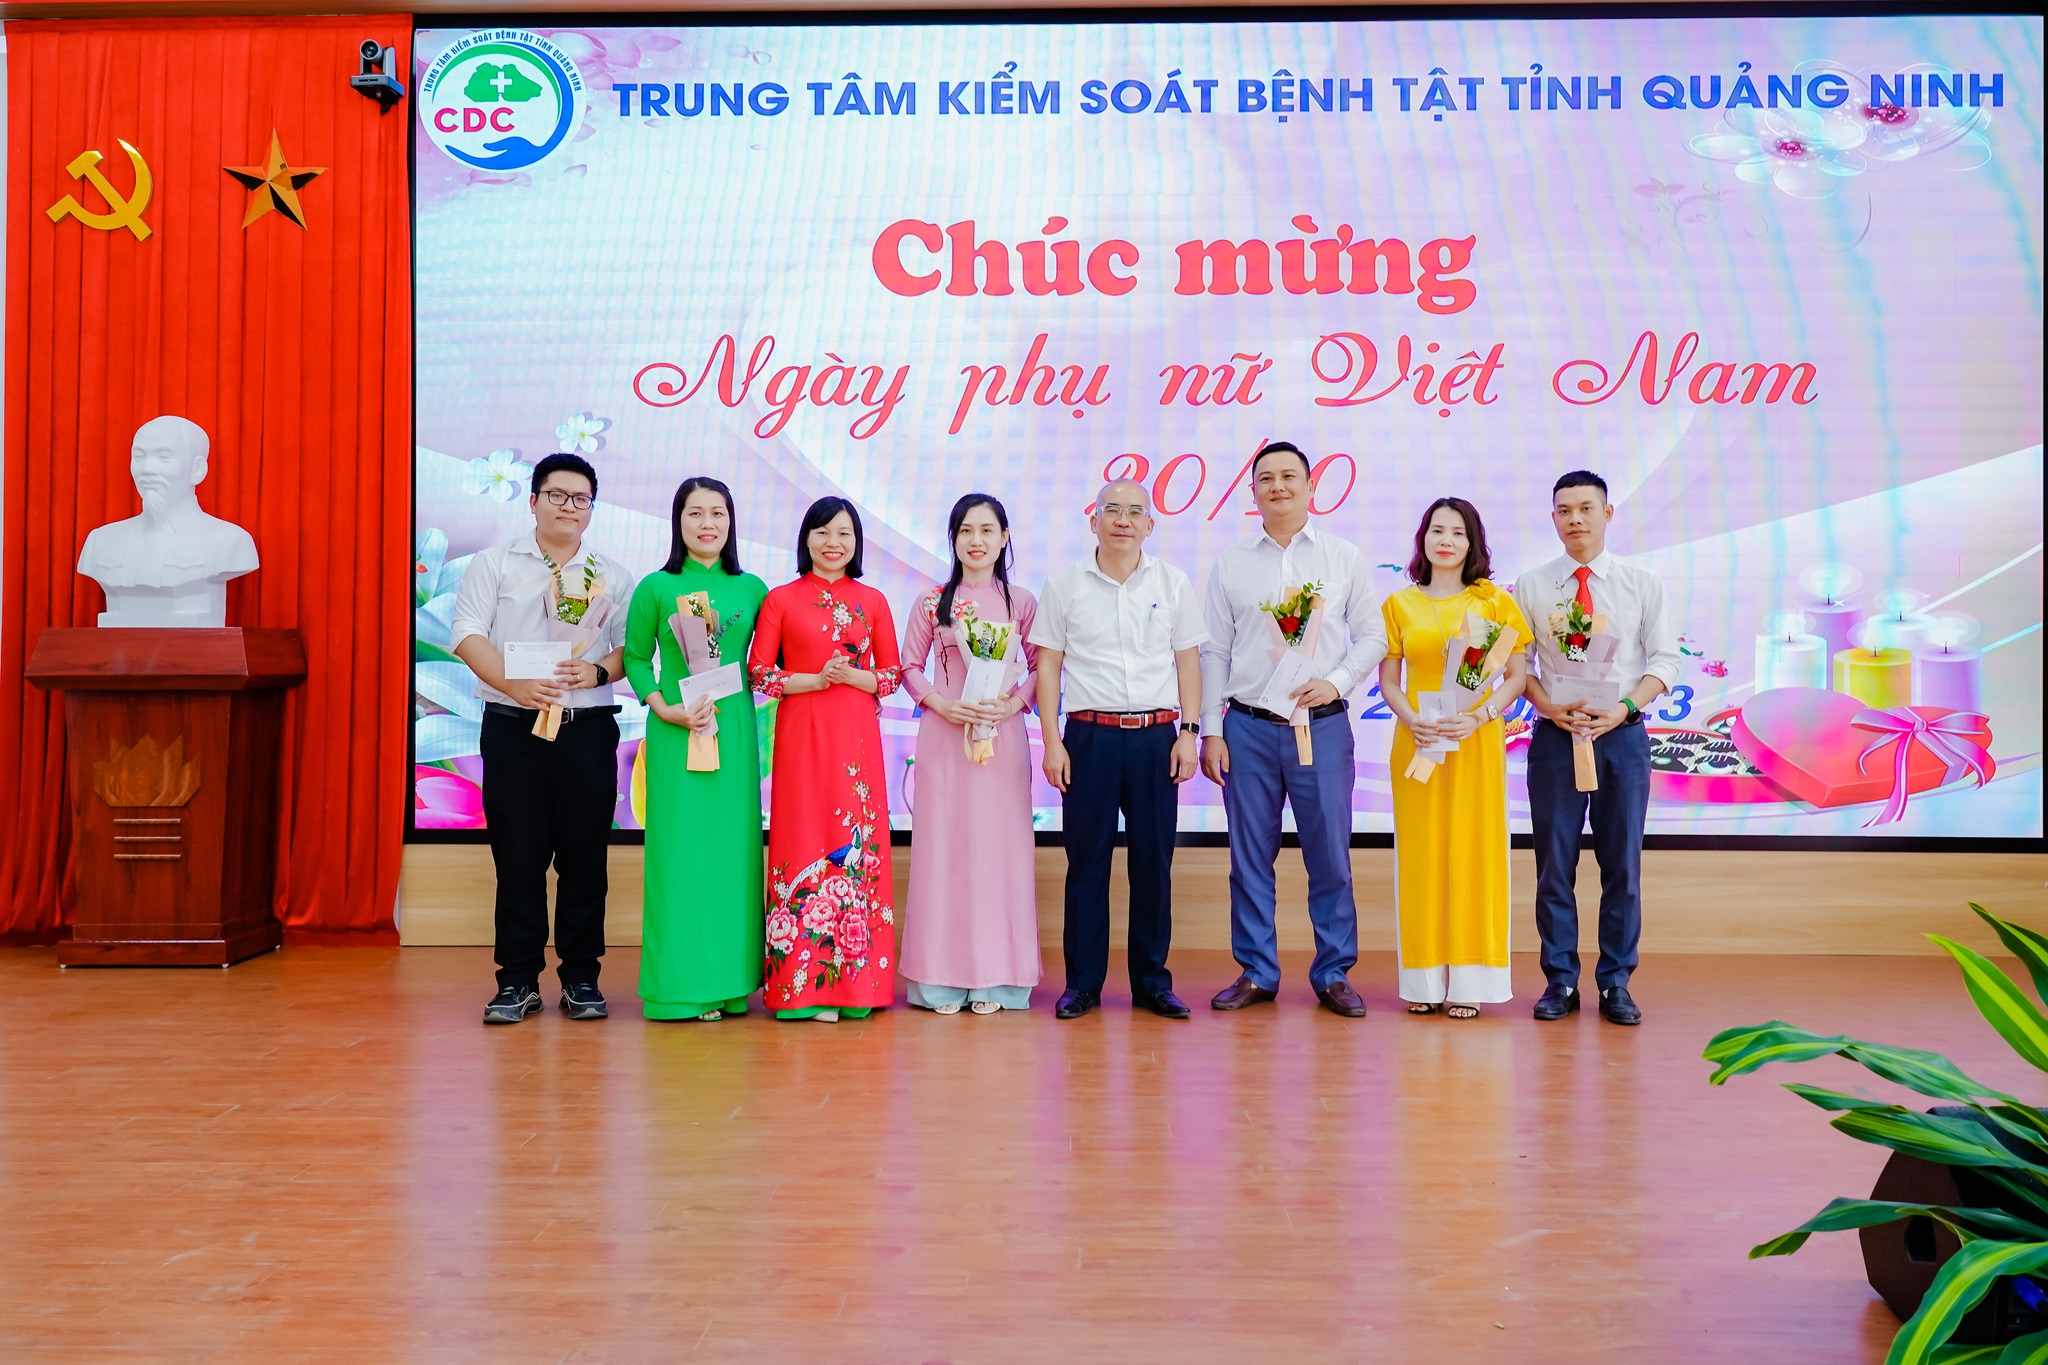 Trung tâm Kiểm soát bệnh tật tỉnh Quảng Ninh tổ chức một số hoạt động ý nghĩa nhân dịp kỷ niệm ngày Phụ nữ Việt Nam